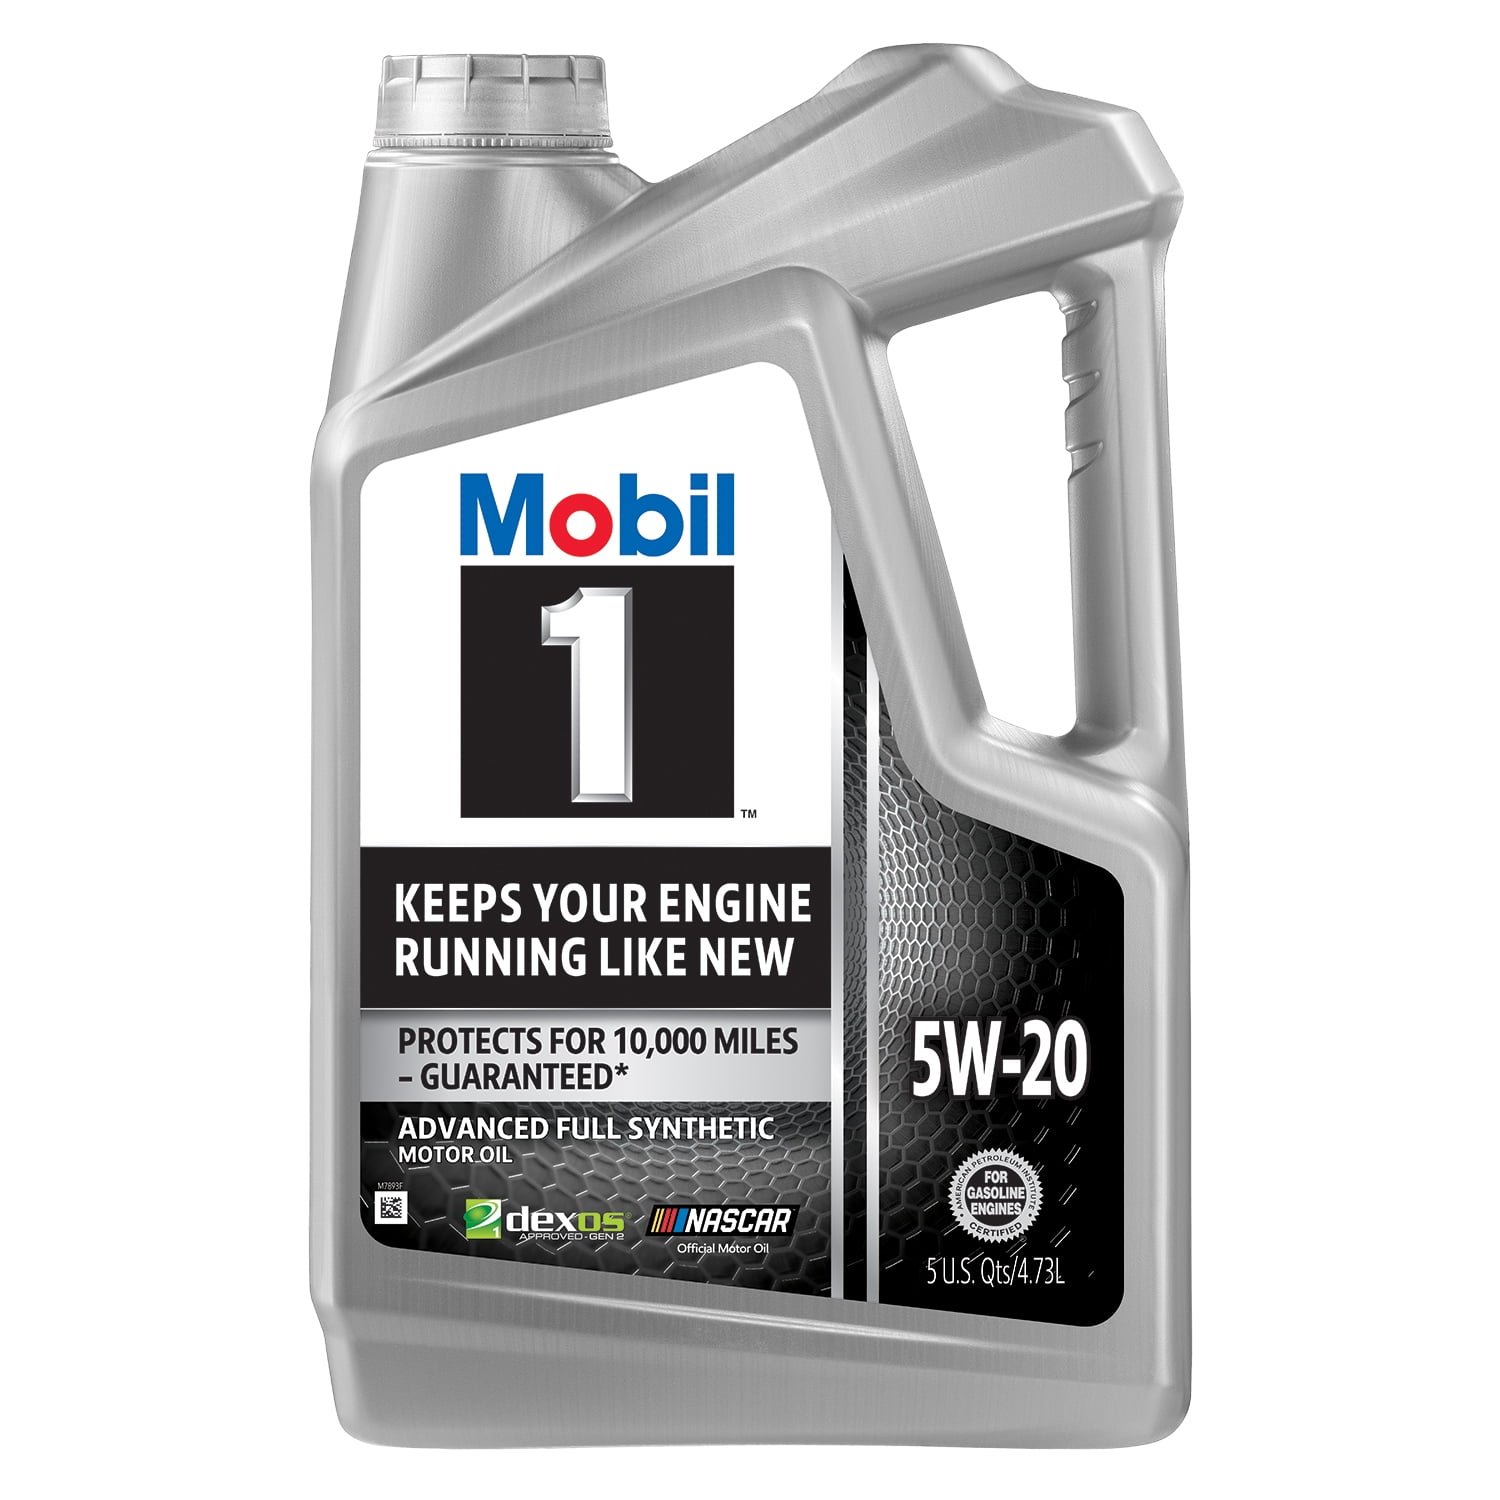 Mobil 1 Advanced Full Synthetic Motor Oil 5W-20, 5 Quart - Walmart.com -  Walmart.com